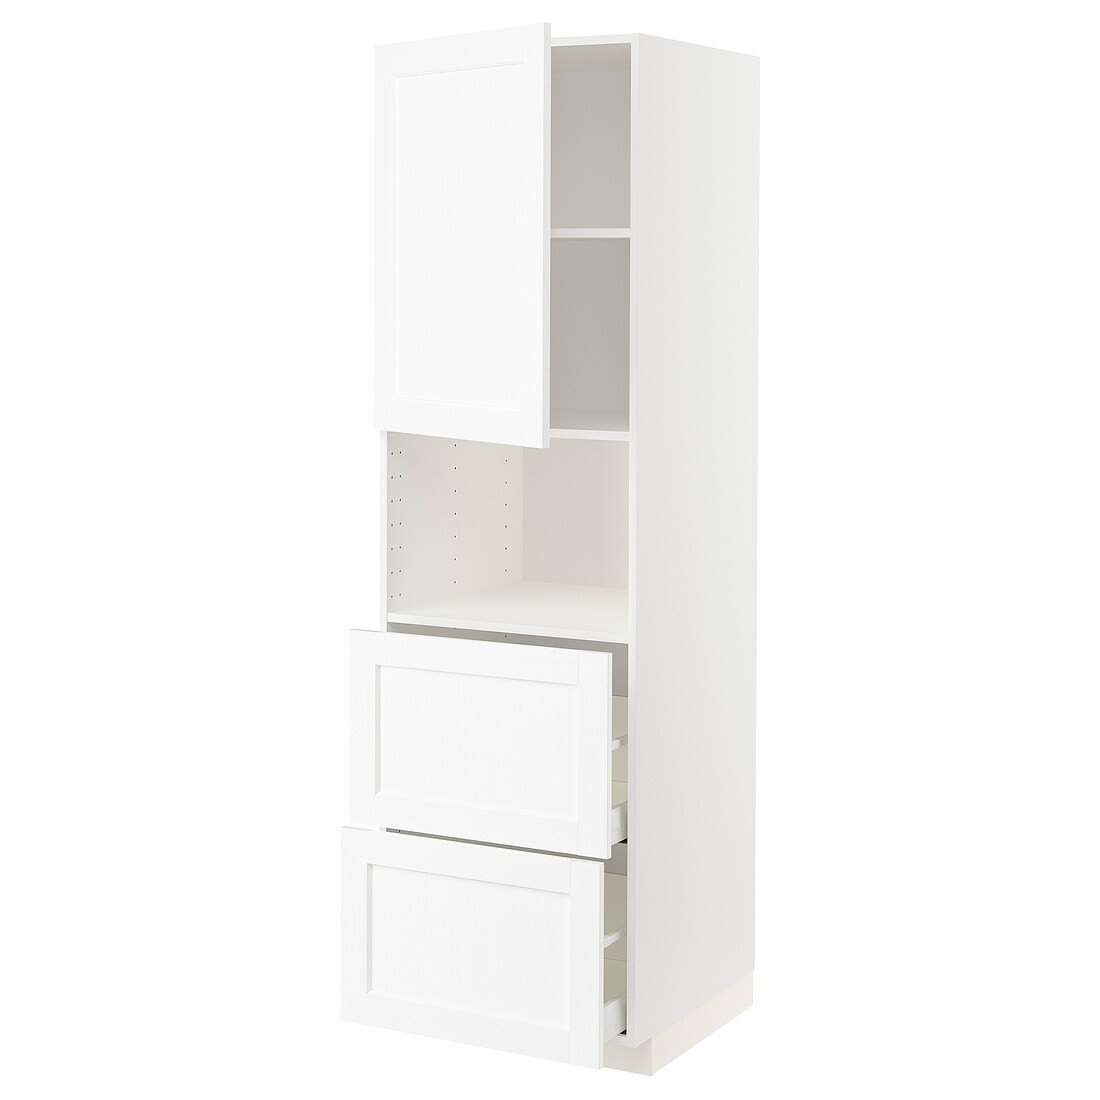 METOD МЕТОД / MAXIMERA МАКСИМЕРА Высокий шкаф для микроволновки с дверями / 2 ящика, белый Enköping / белый имитация дерева, 60x60x200 см